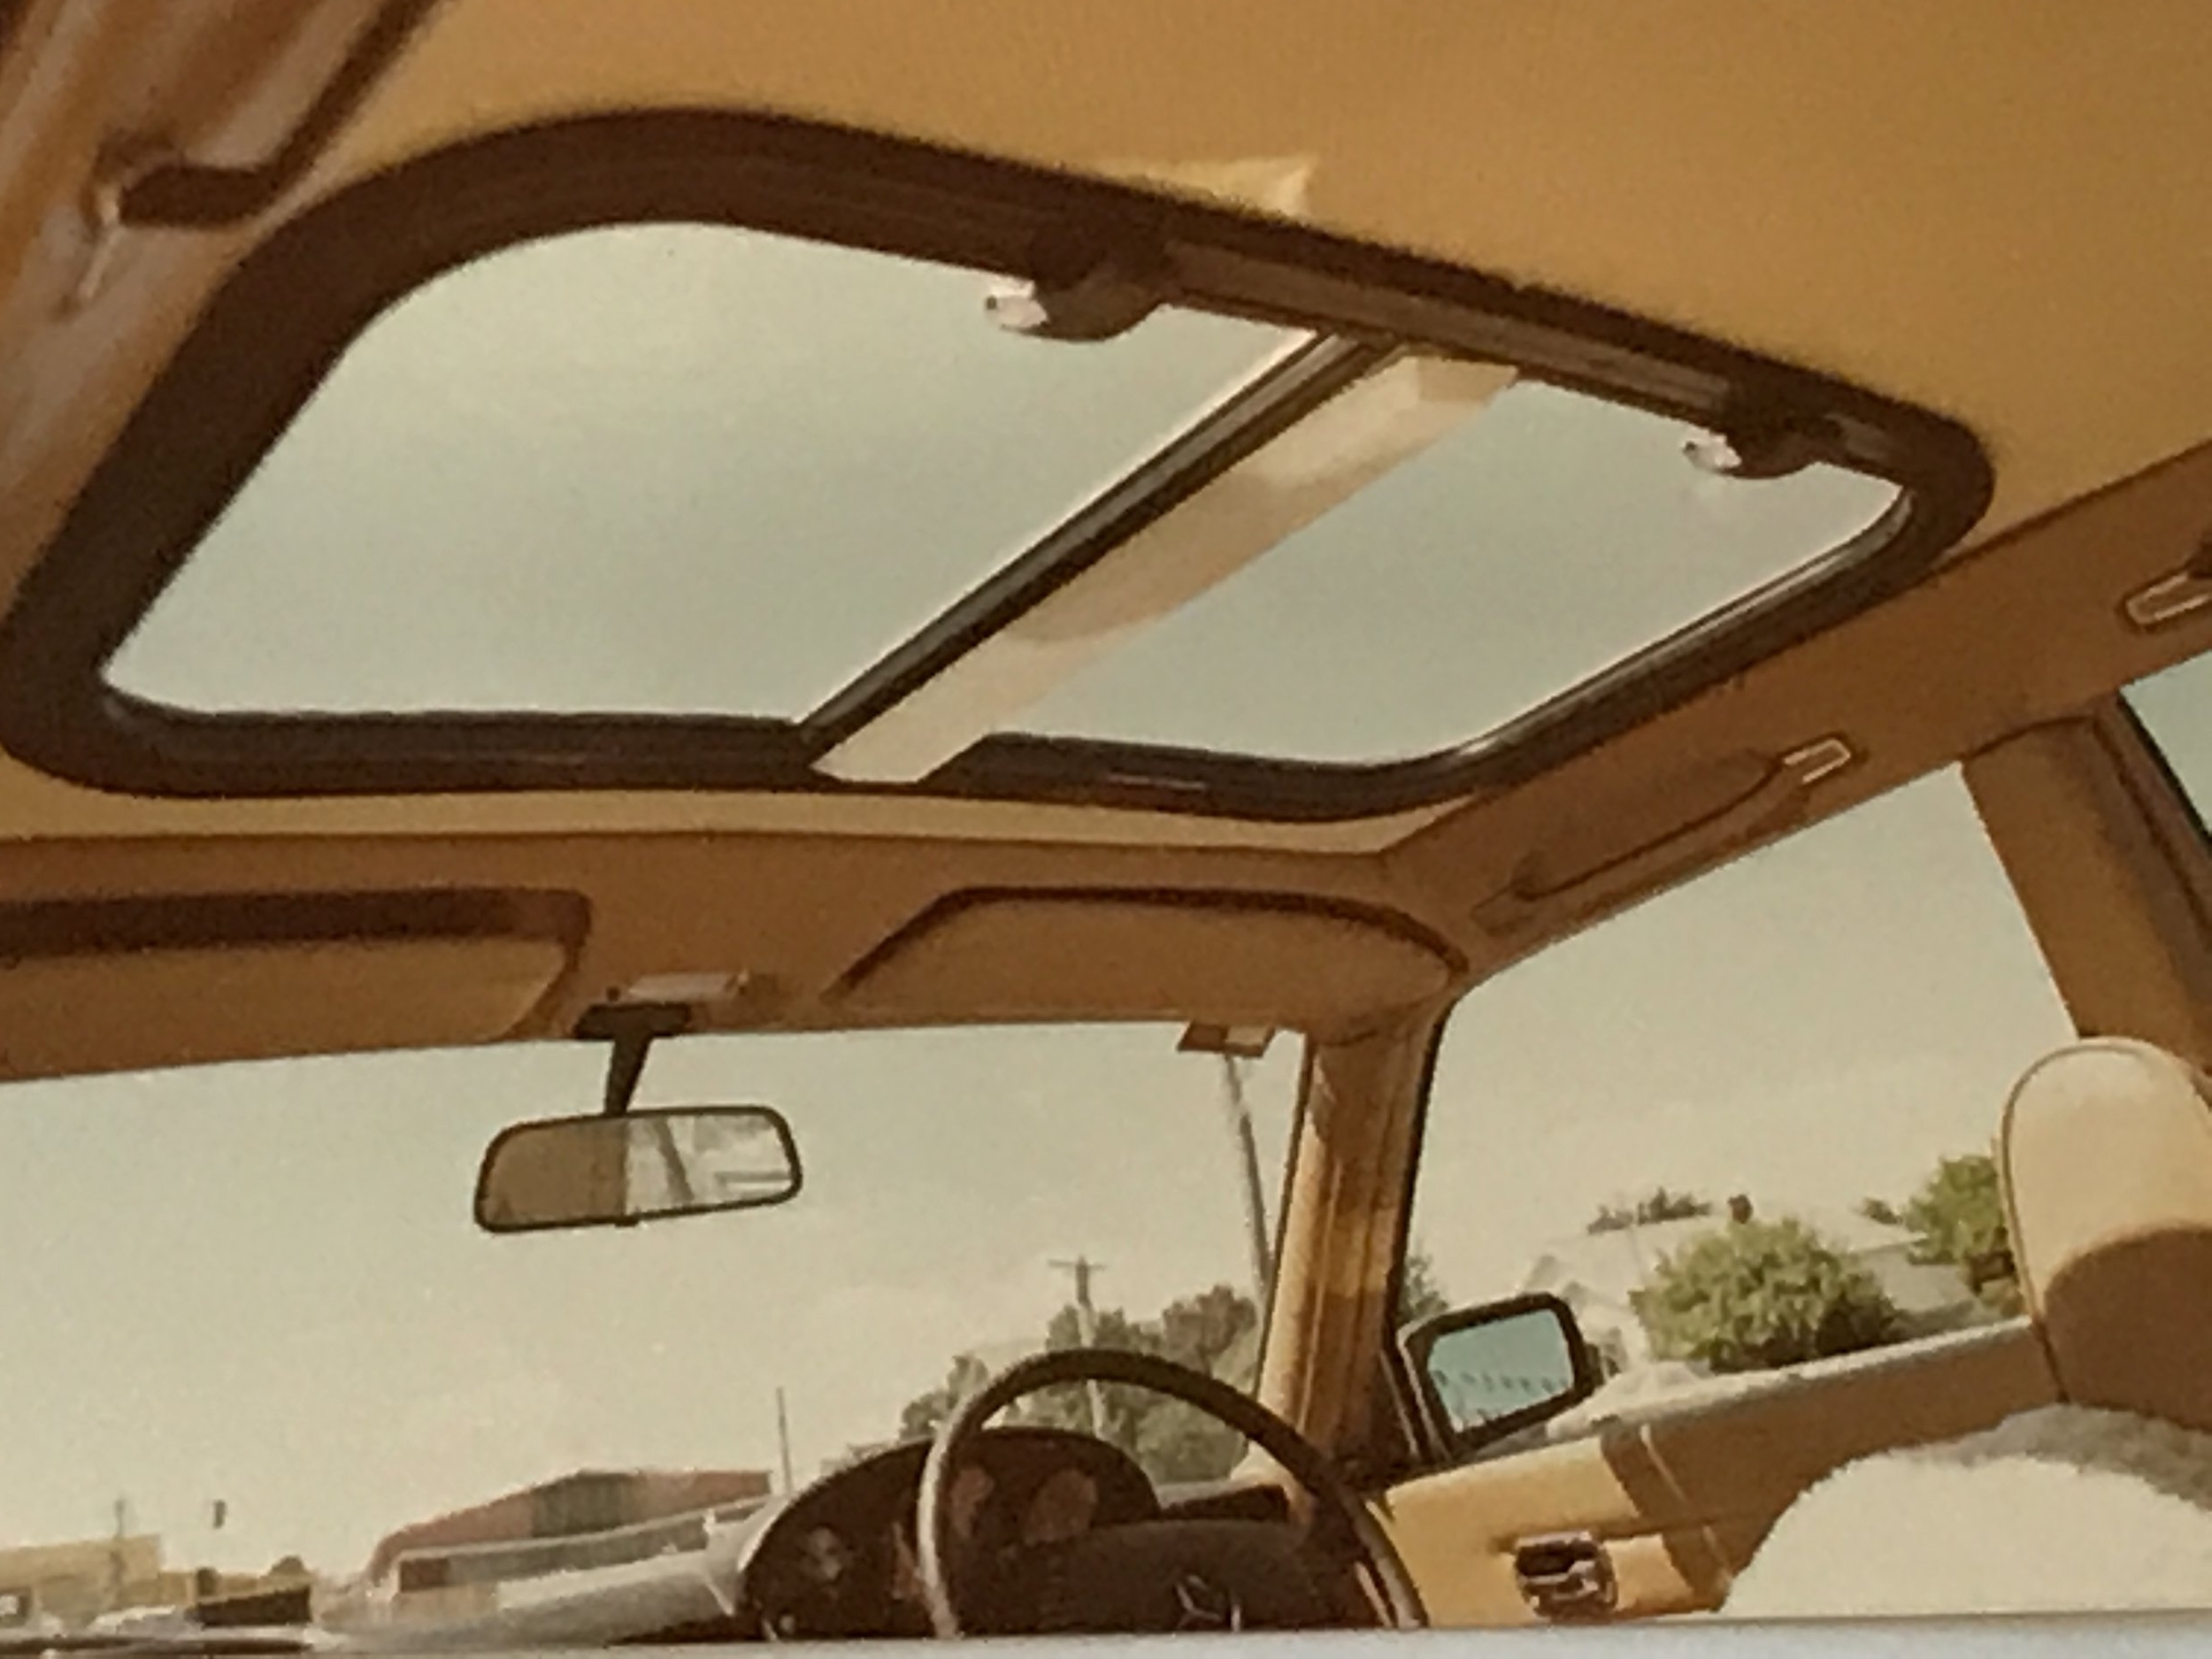 Targa Top Sun Roof 1970s-mid 80s